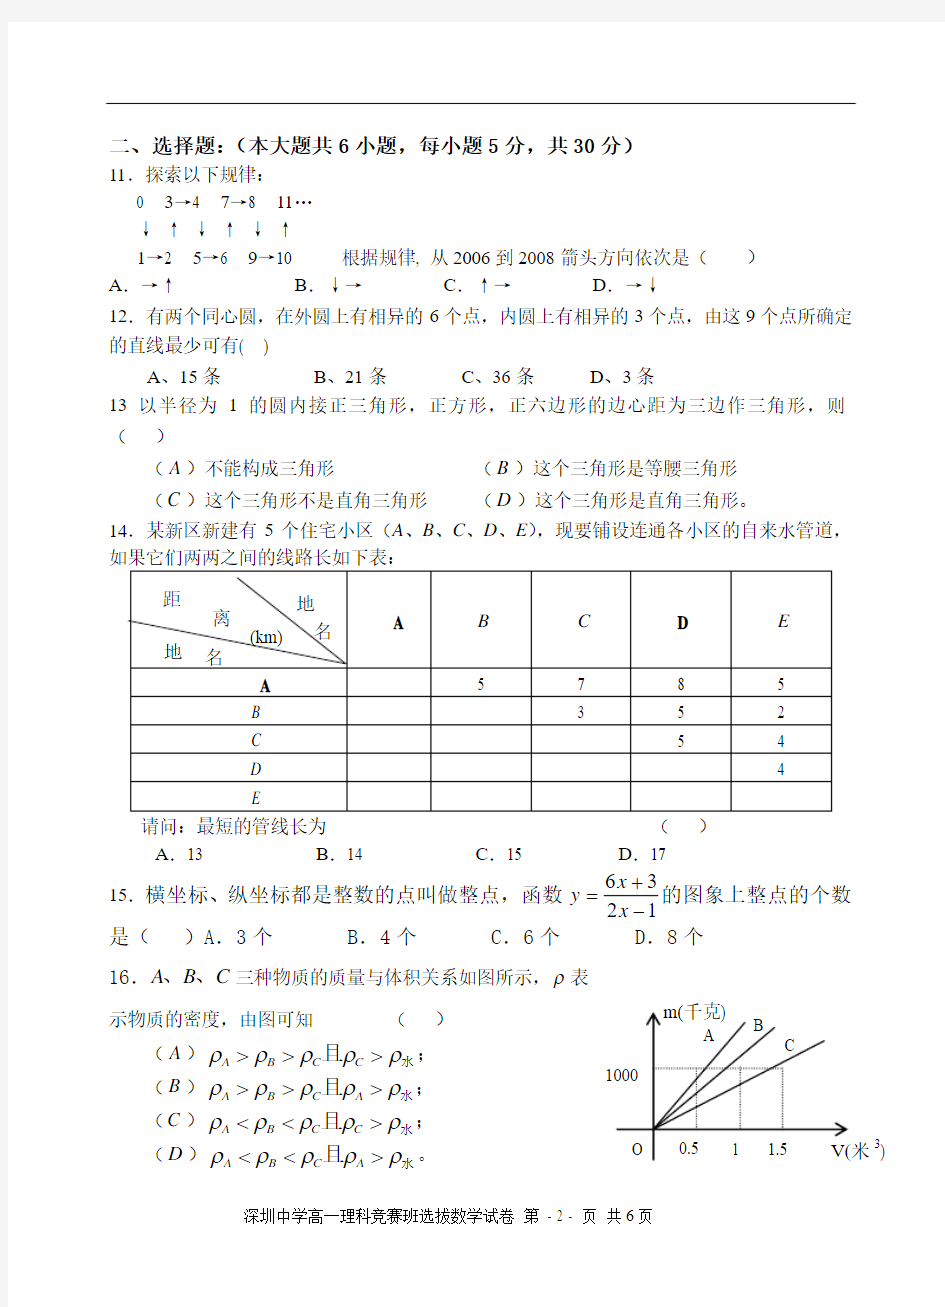 2006年深圳中学高中理科竞赛班招生考试数学试卷7-22